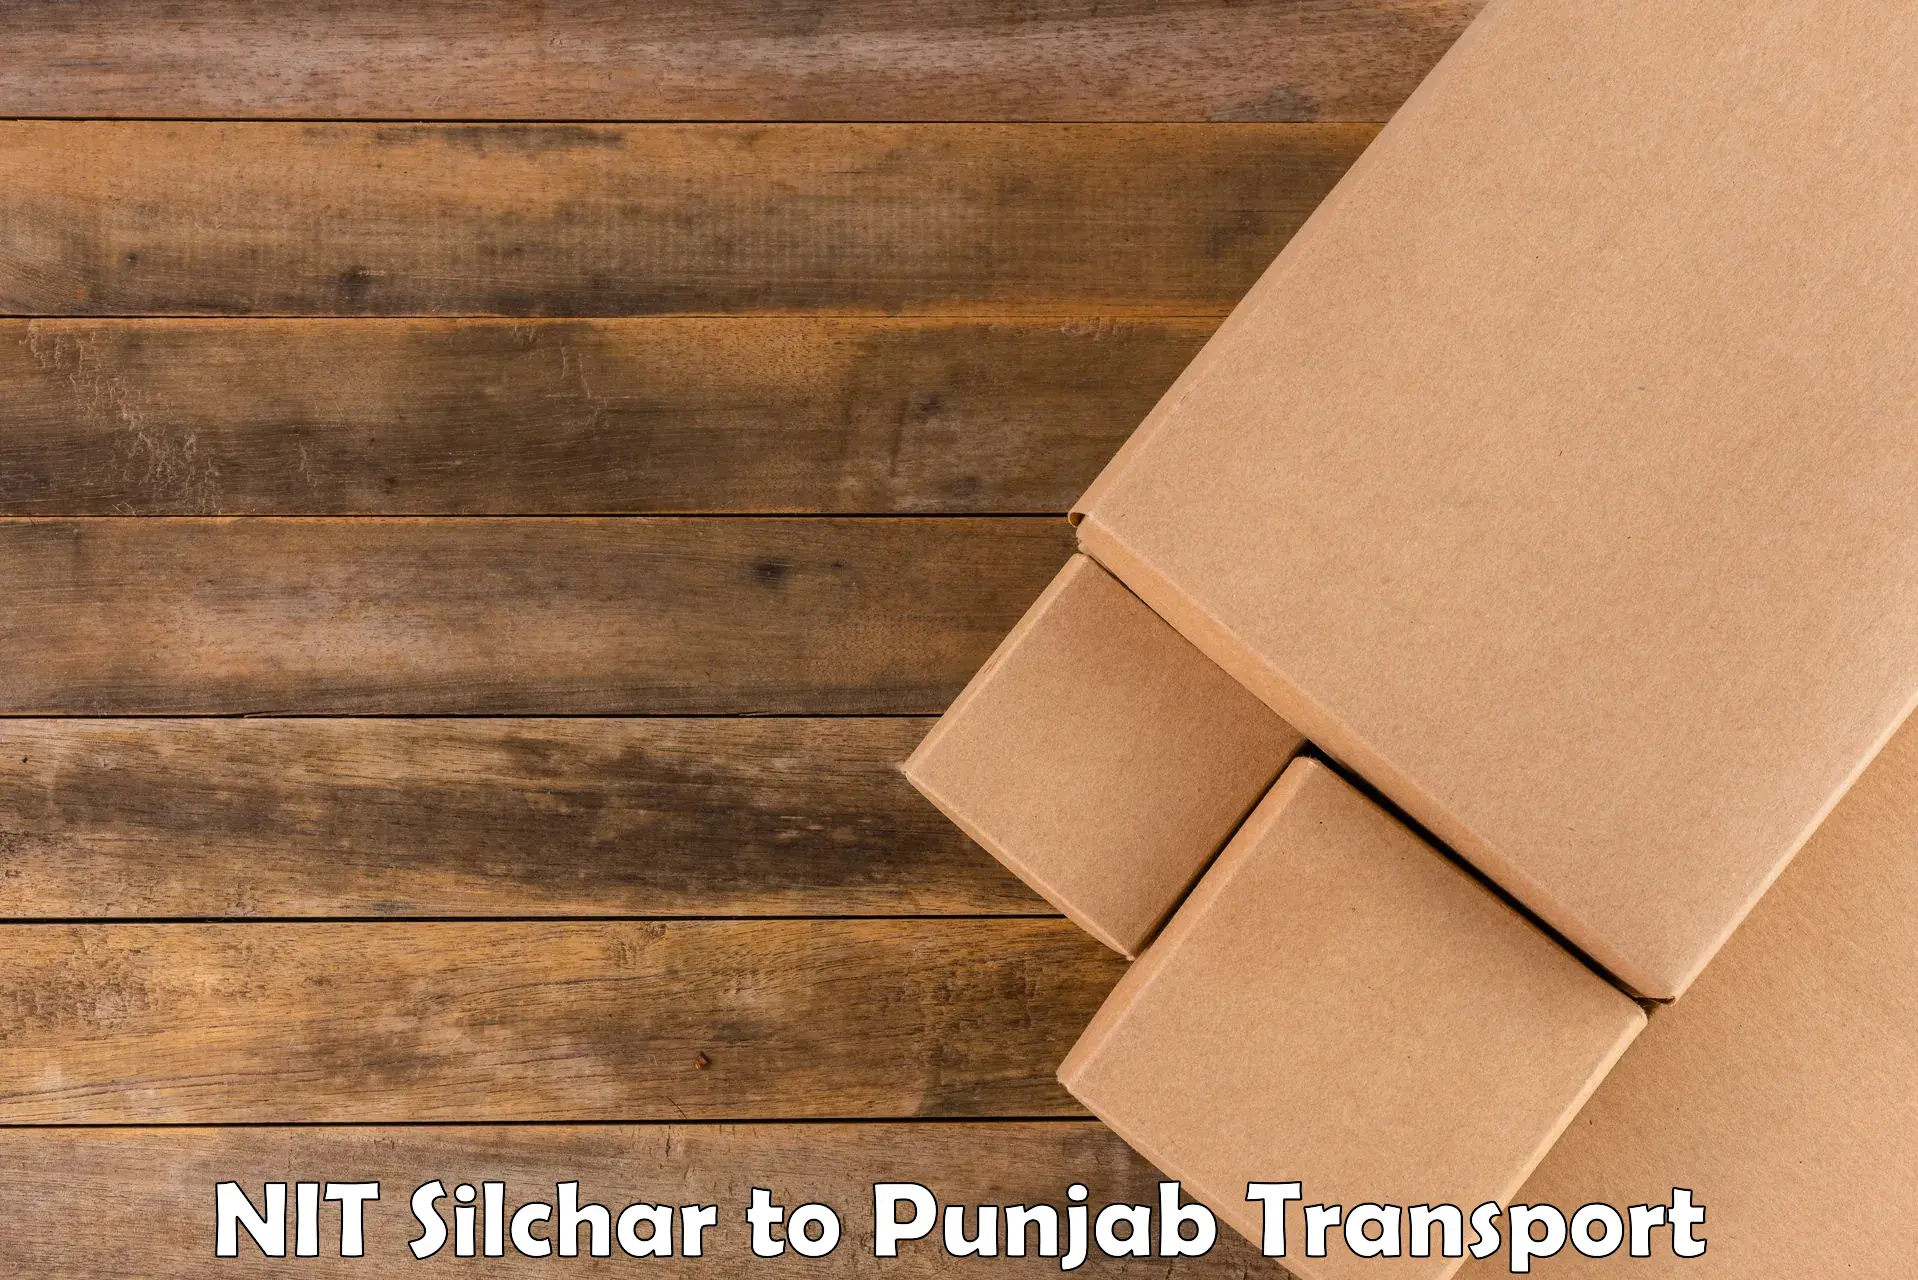 Inland transportation services NIT Silchar to Jalandhar